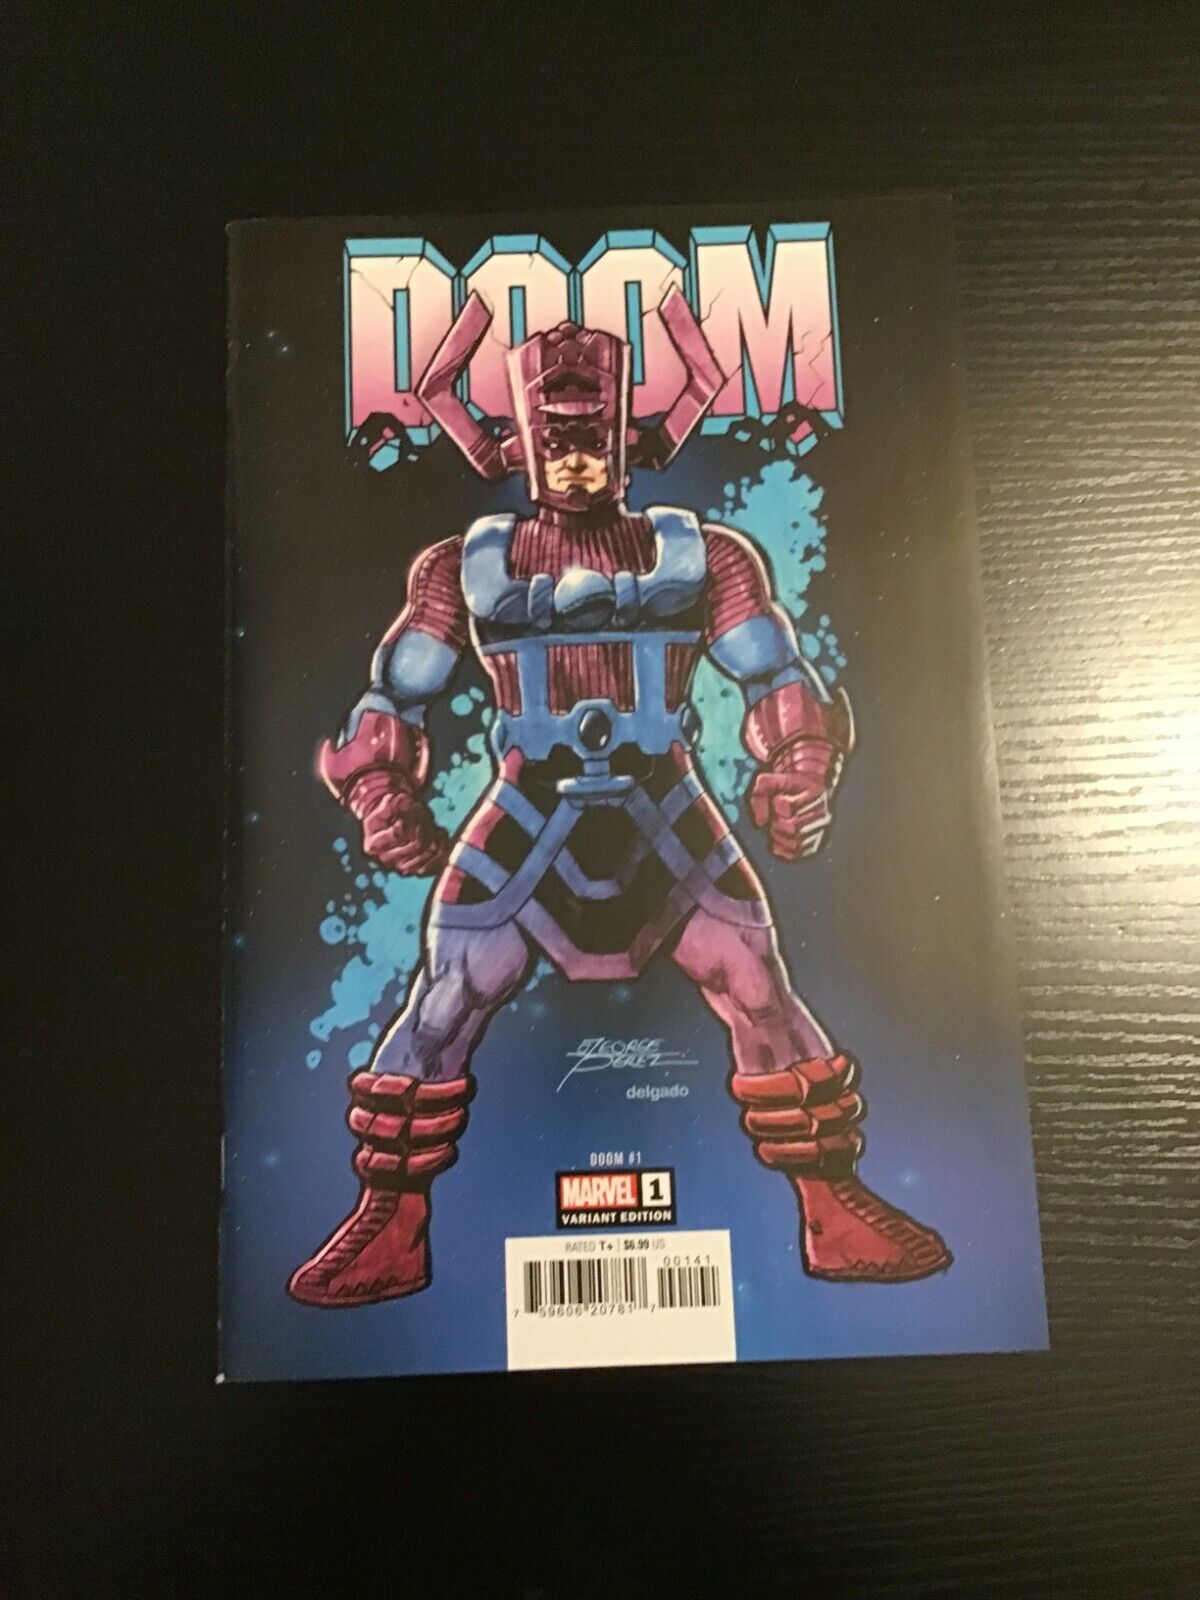 Doom #1 (George Perez variant)